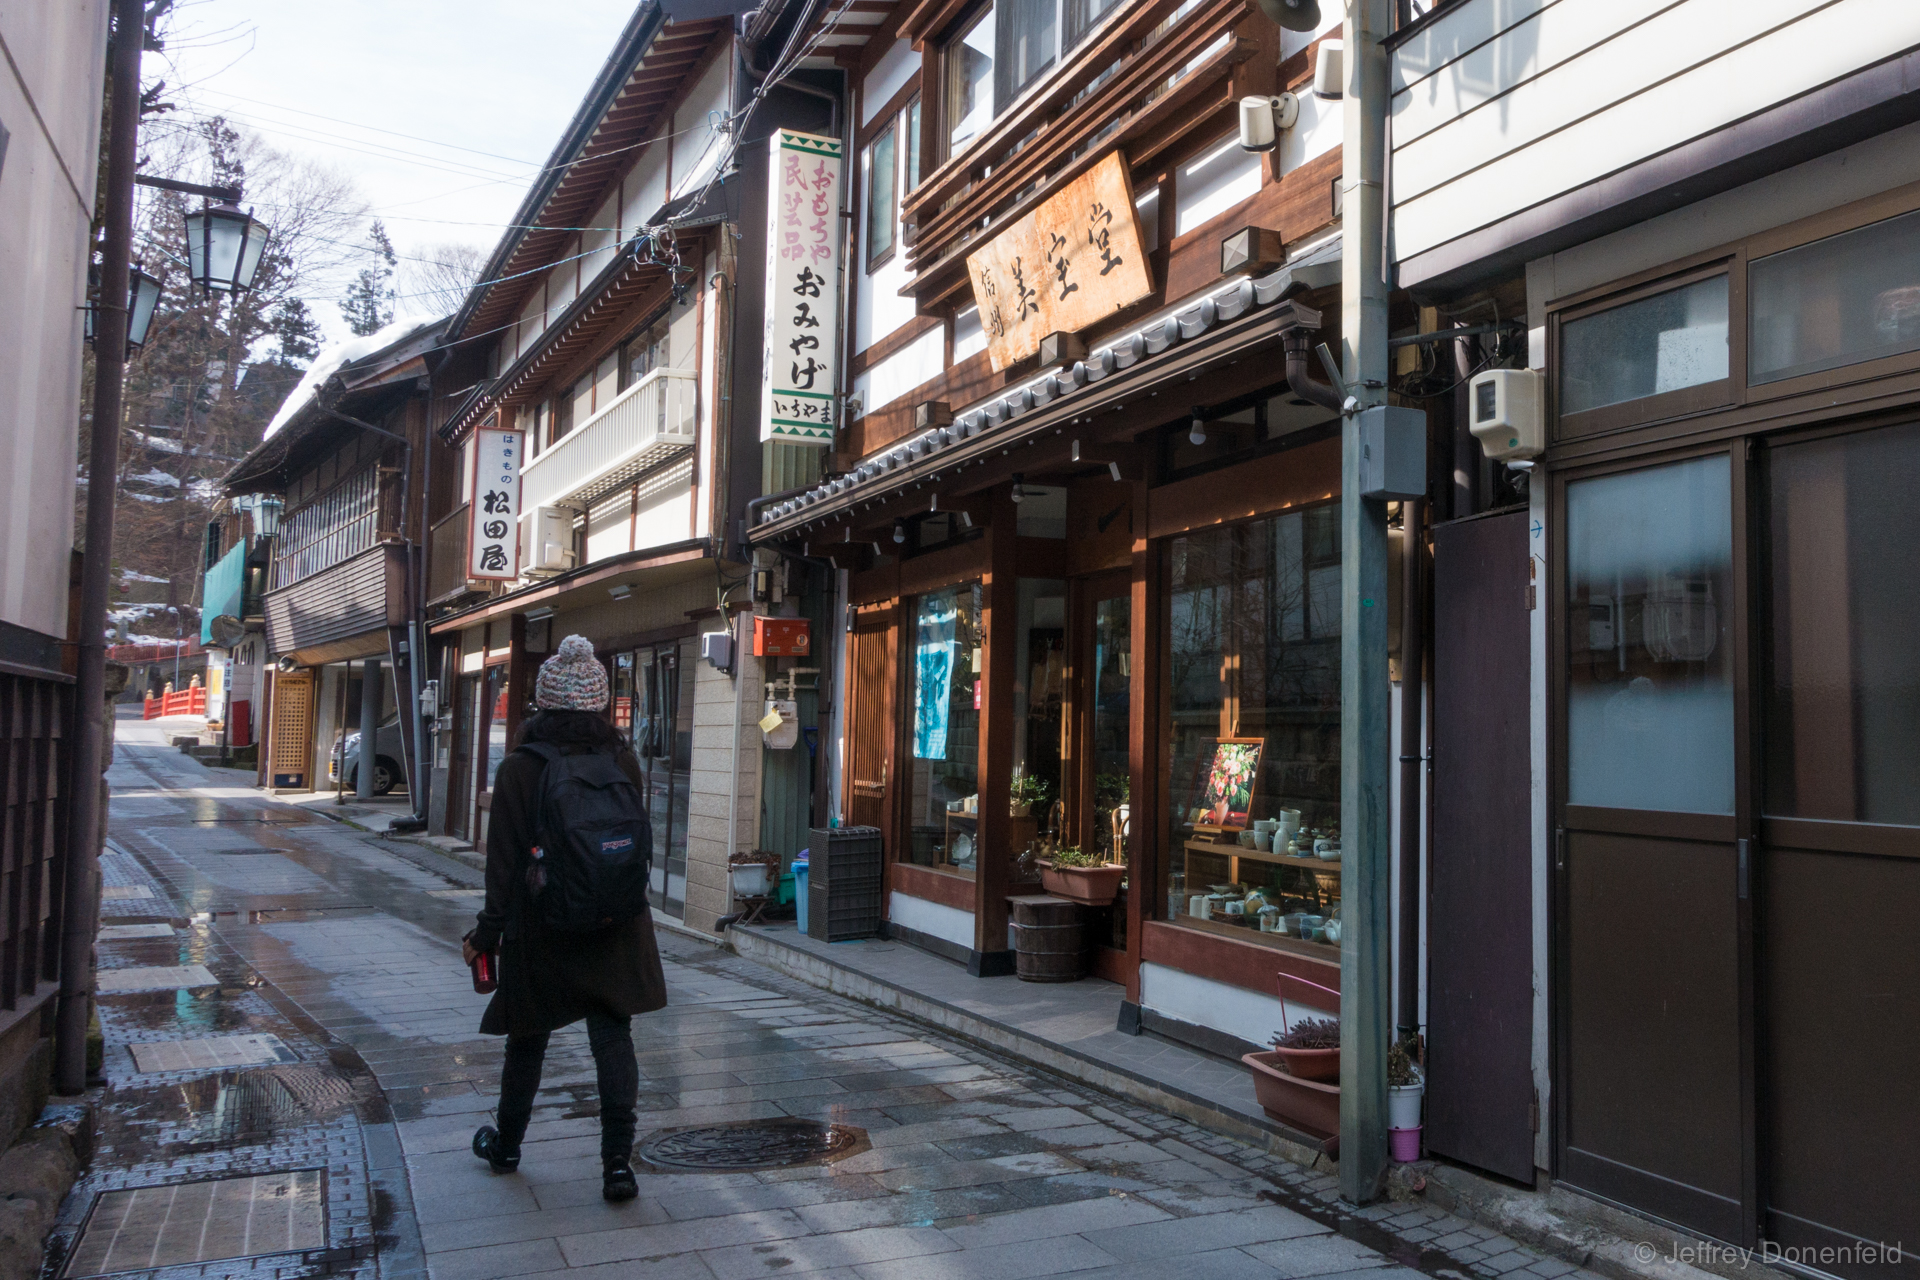 Walking through Shibu Onsen - such a beautiful town.